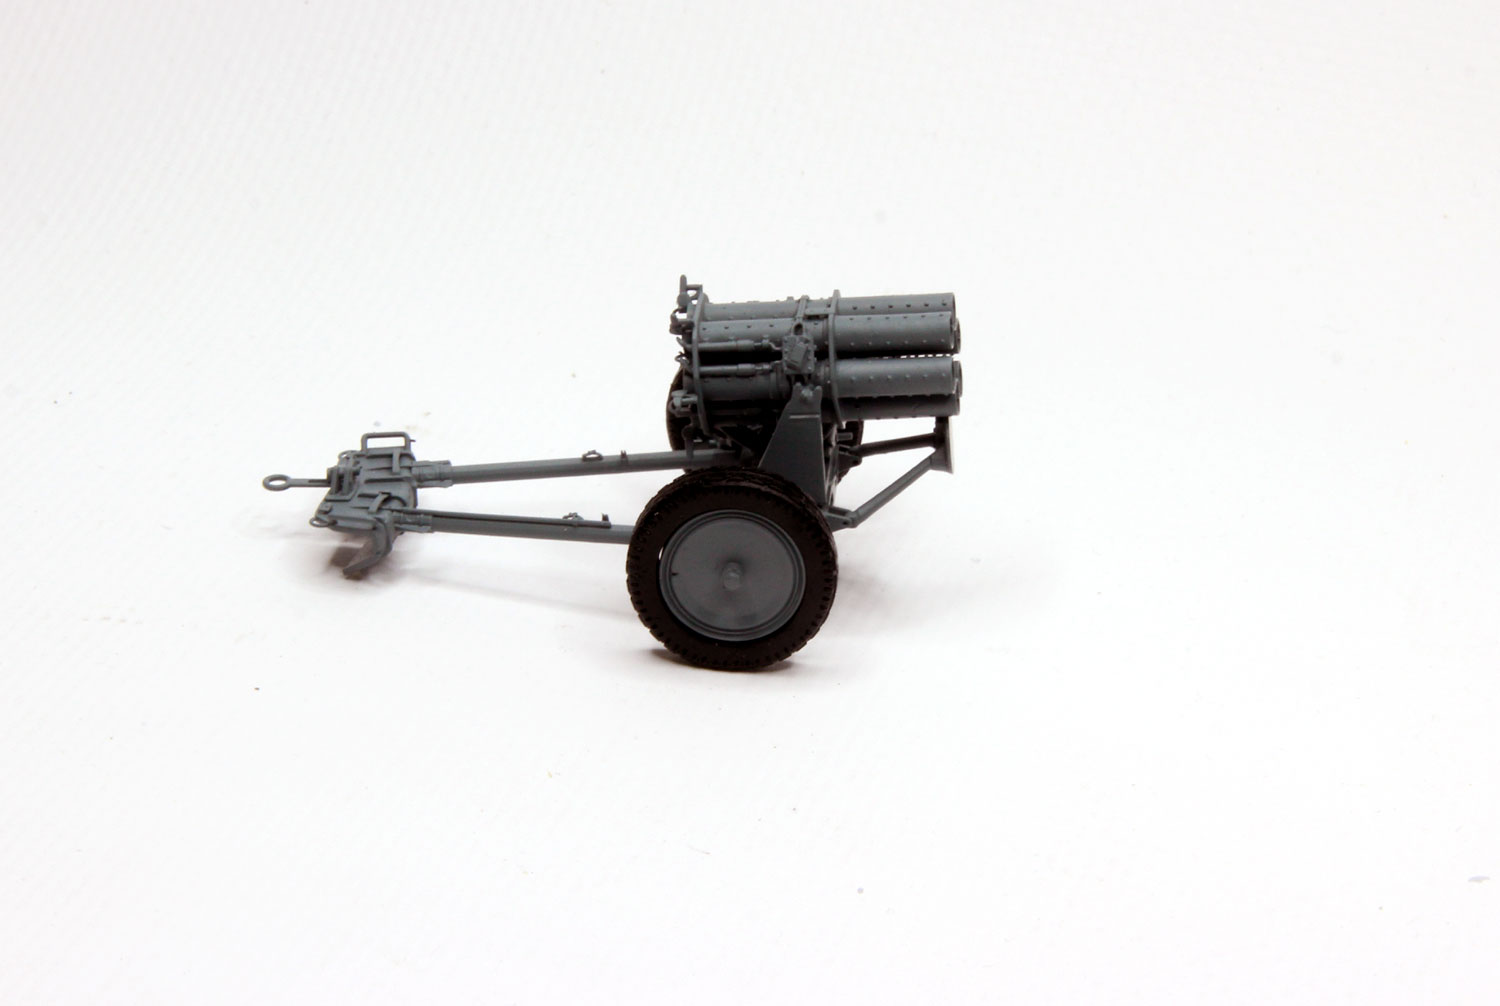 Nebelwerfer 41 шестиствольный миномёт (со сложенными станинами) модель в масштабе 1:35 фото 1